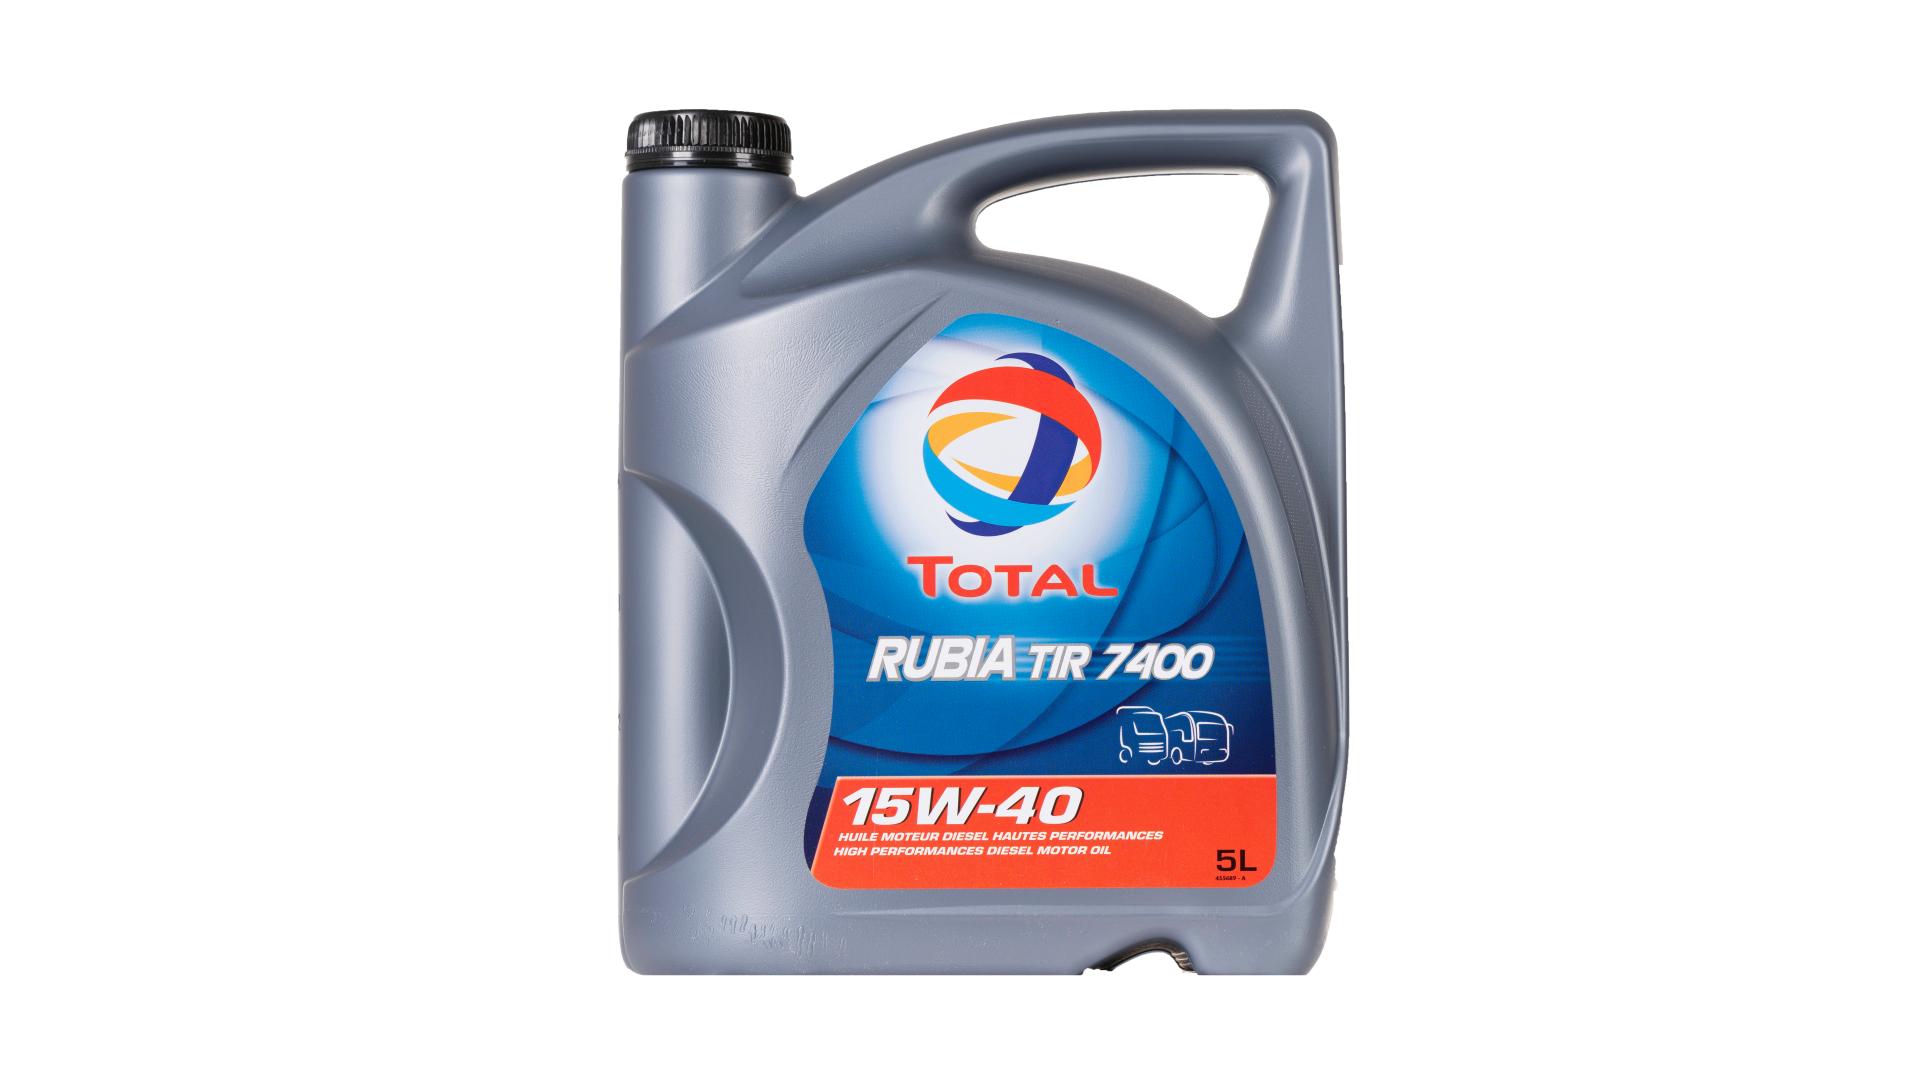 Total 15w-40 RubiaTir 7400 5L (148585)